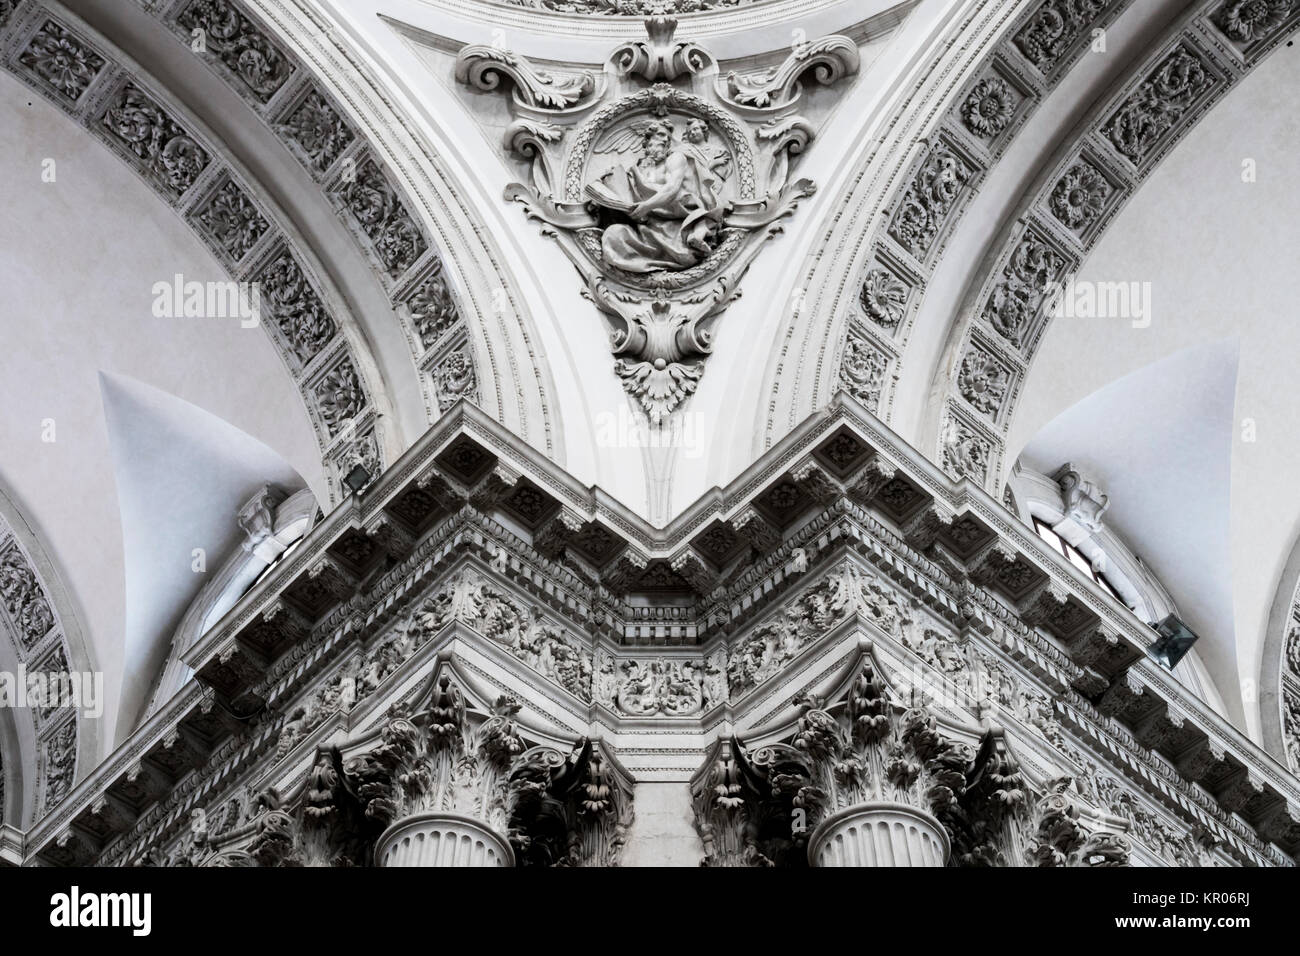 Eine der Zwickeln innerhalb des Duomo Nuovo oder Neue Kathedrale, die größte Römische Katholische Kirche in Brescia, Italien Stockfoto